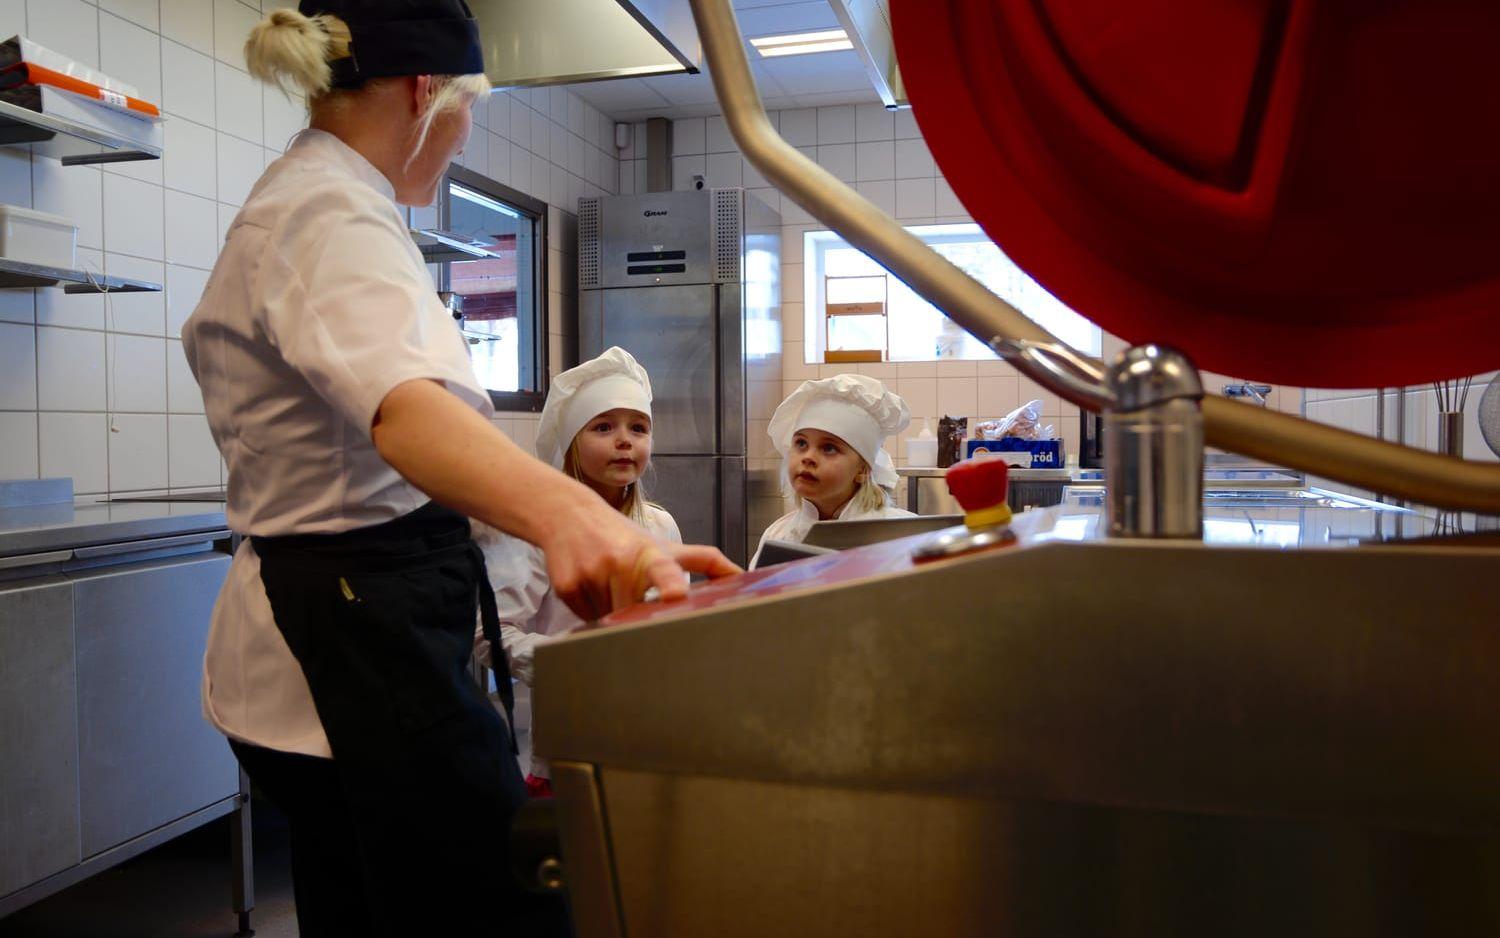 Innan de hjälper till med mellanmålet får tjejerna en rundtur i köket. Bild: Karina Hansson